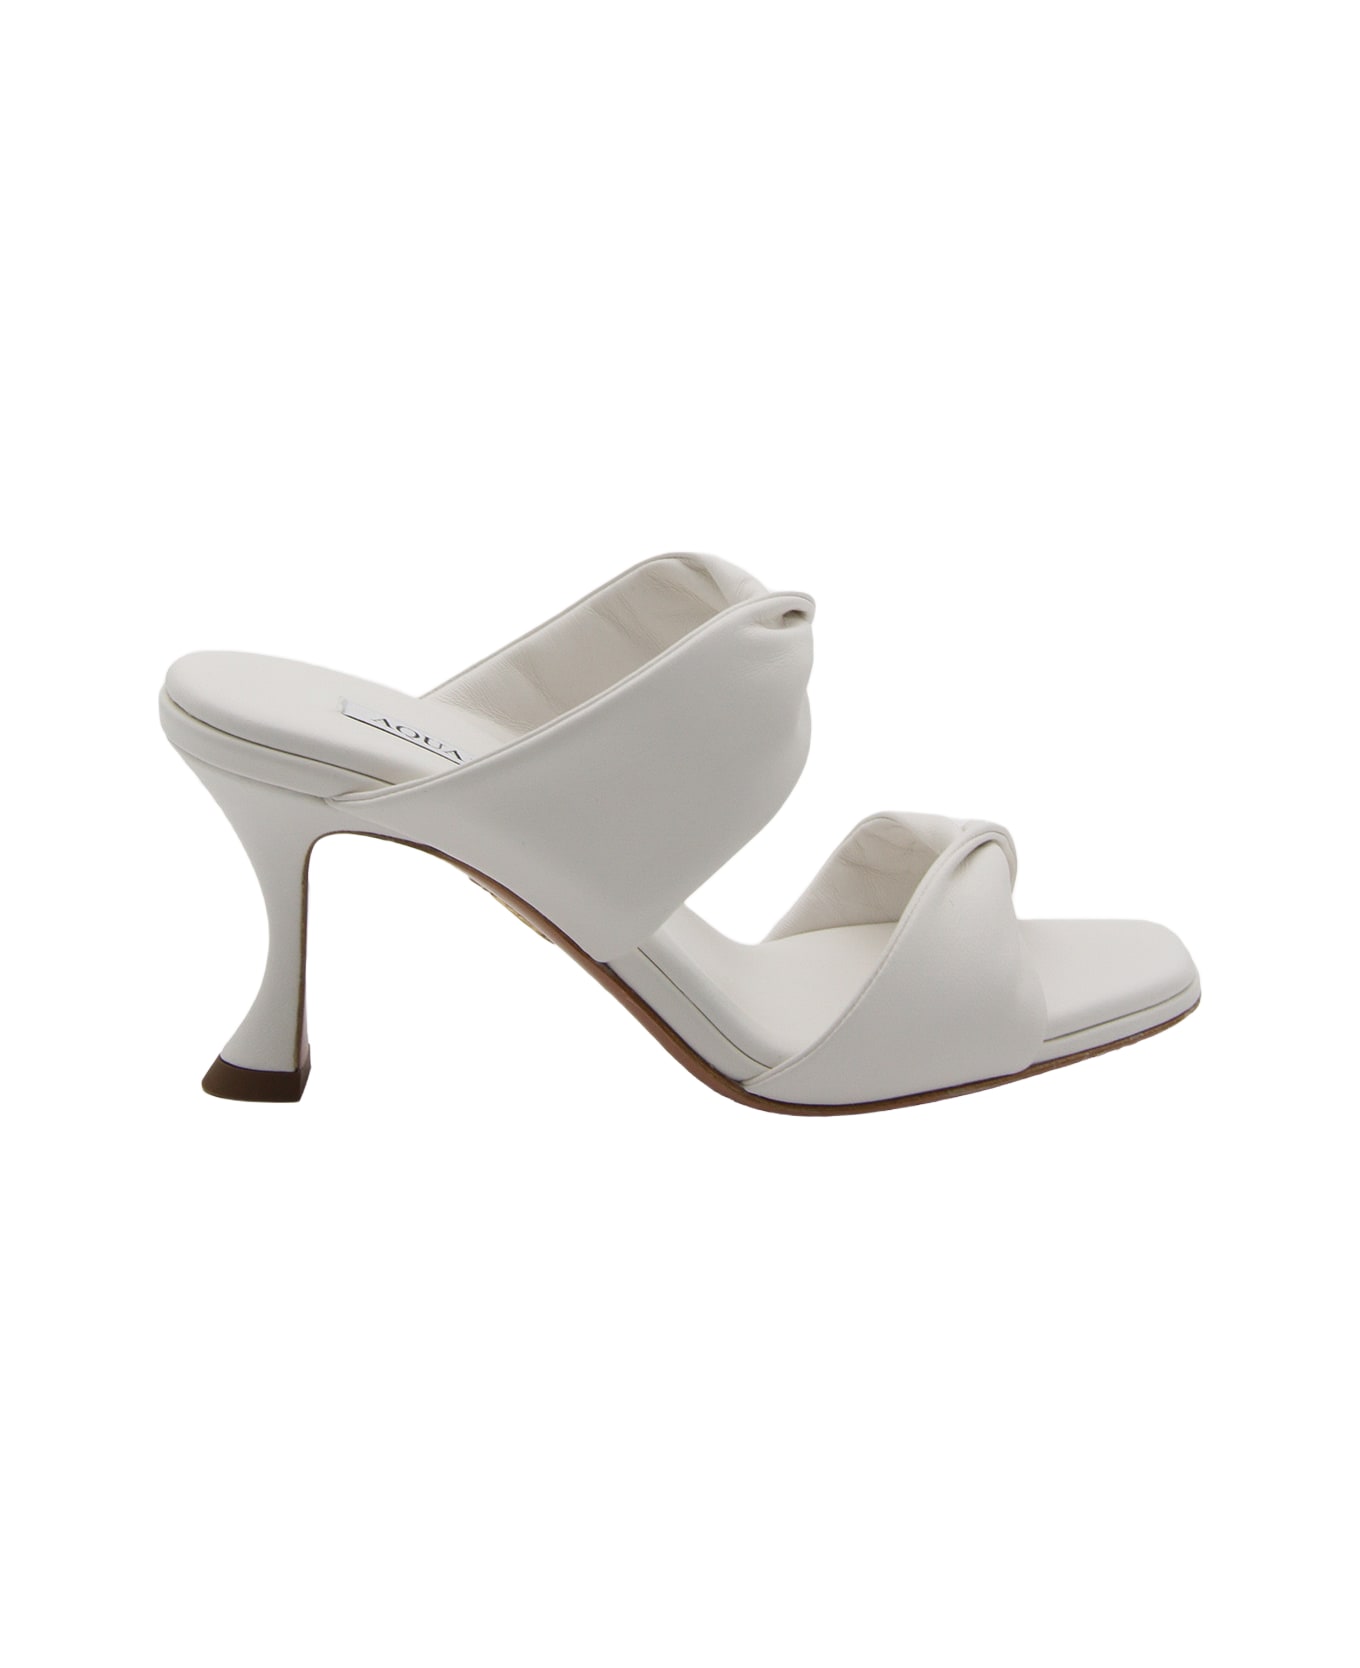 Aquazzura White Leather Twist Sandals - White サンダル